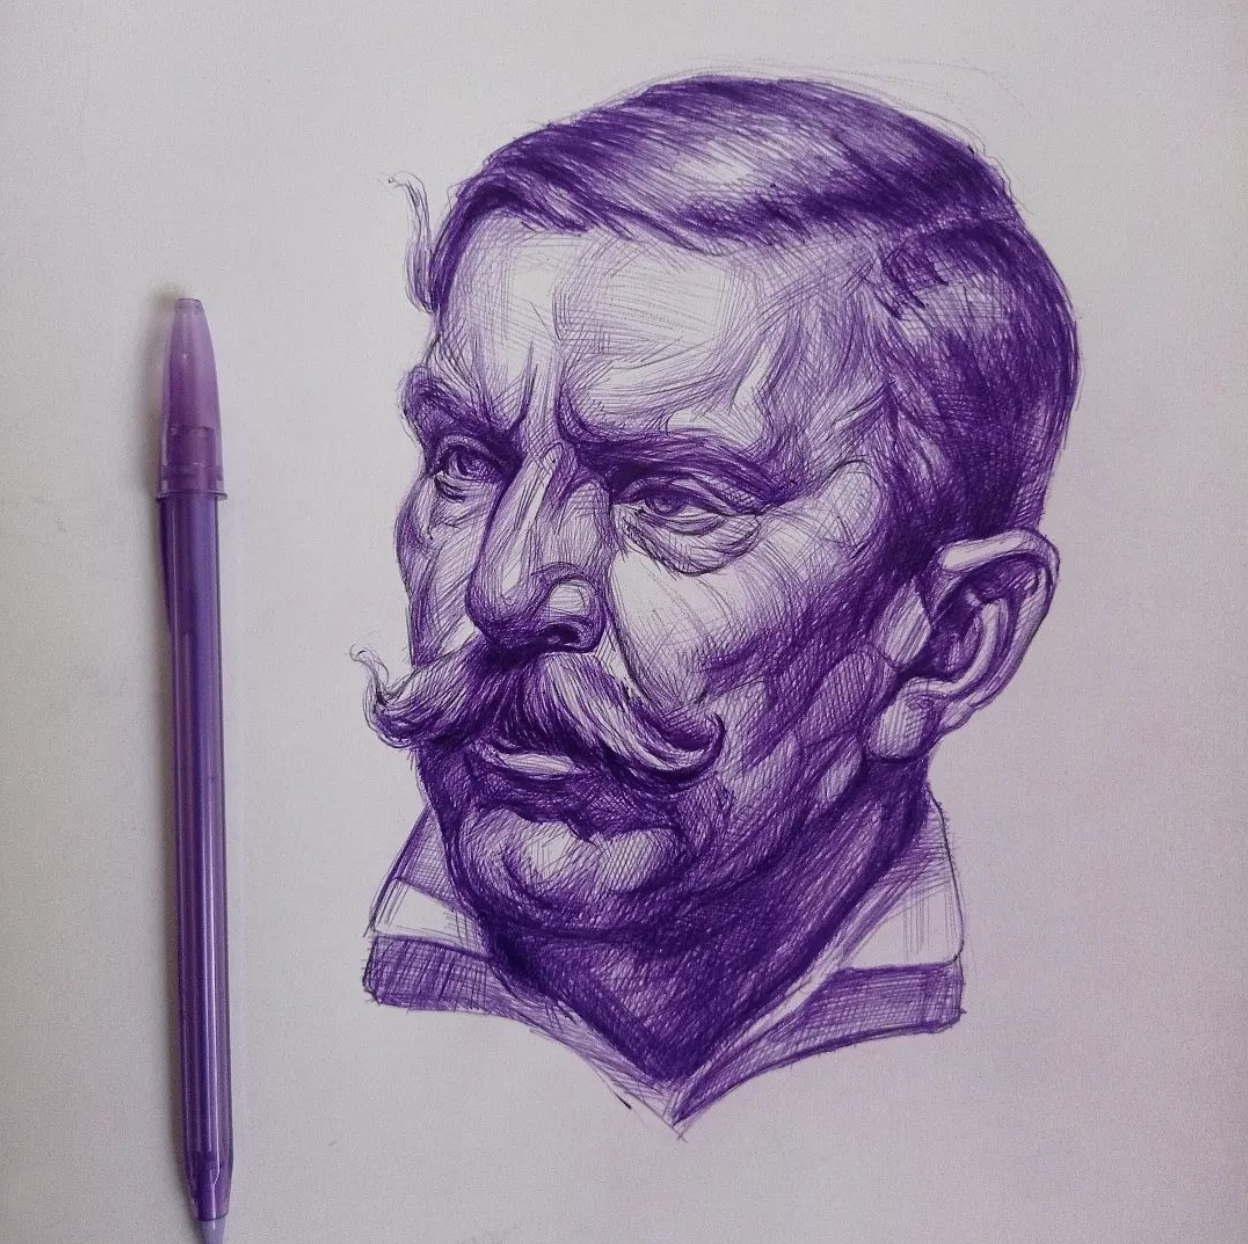 Purple ballpoint pen illustration of a man